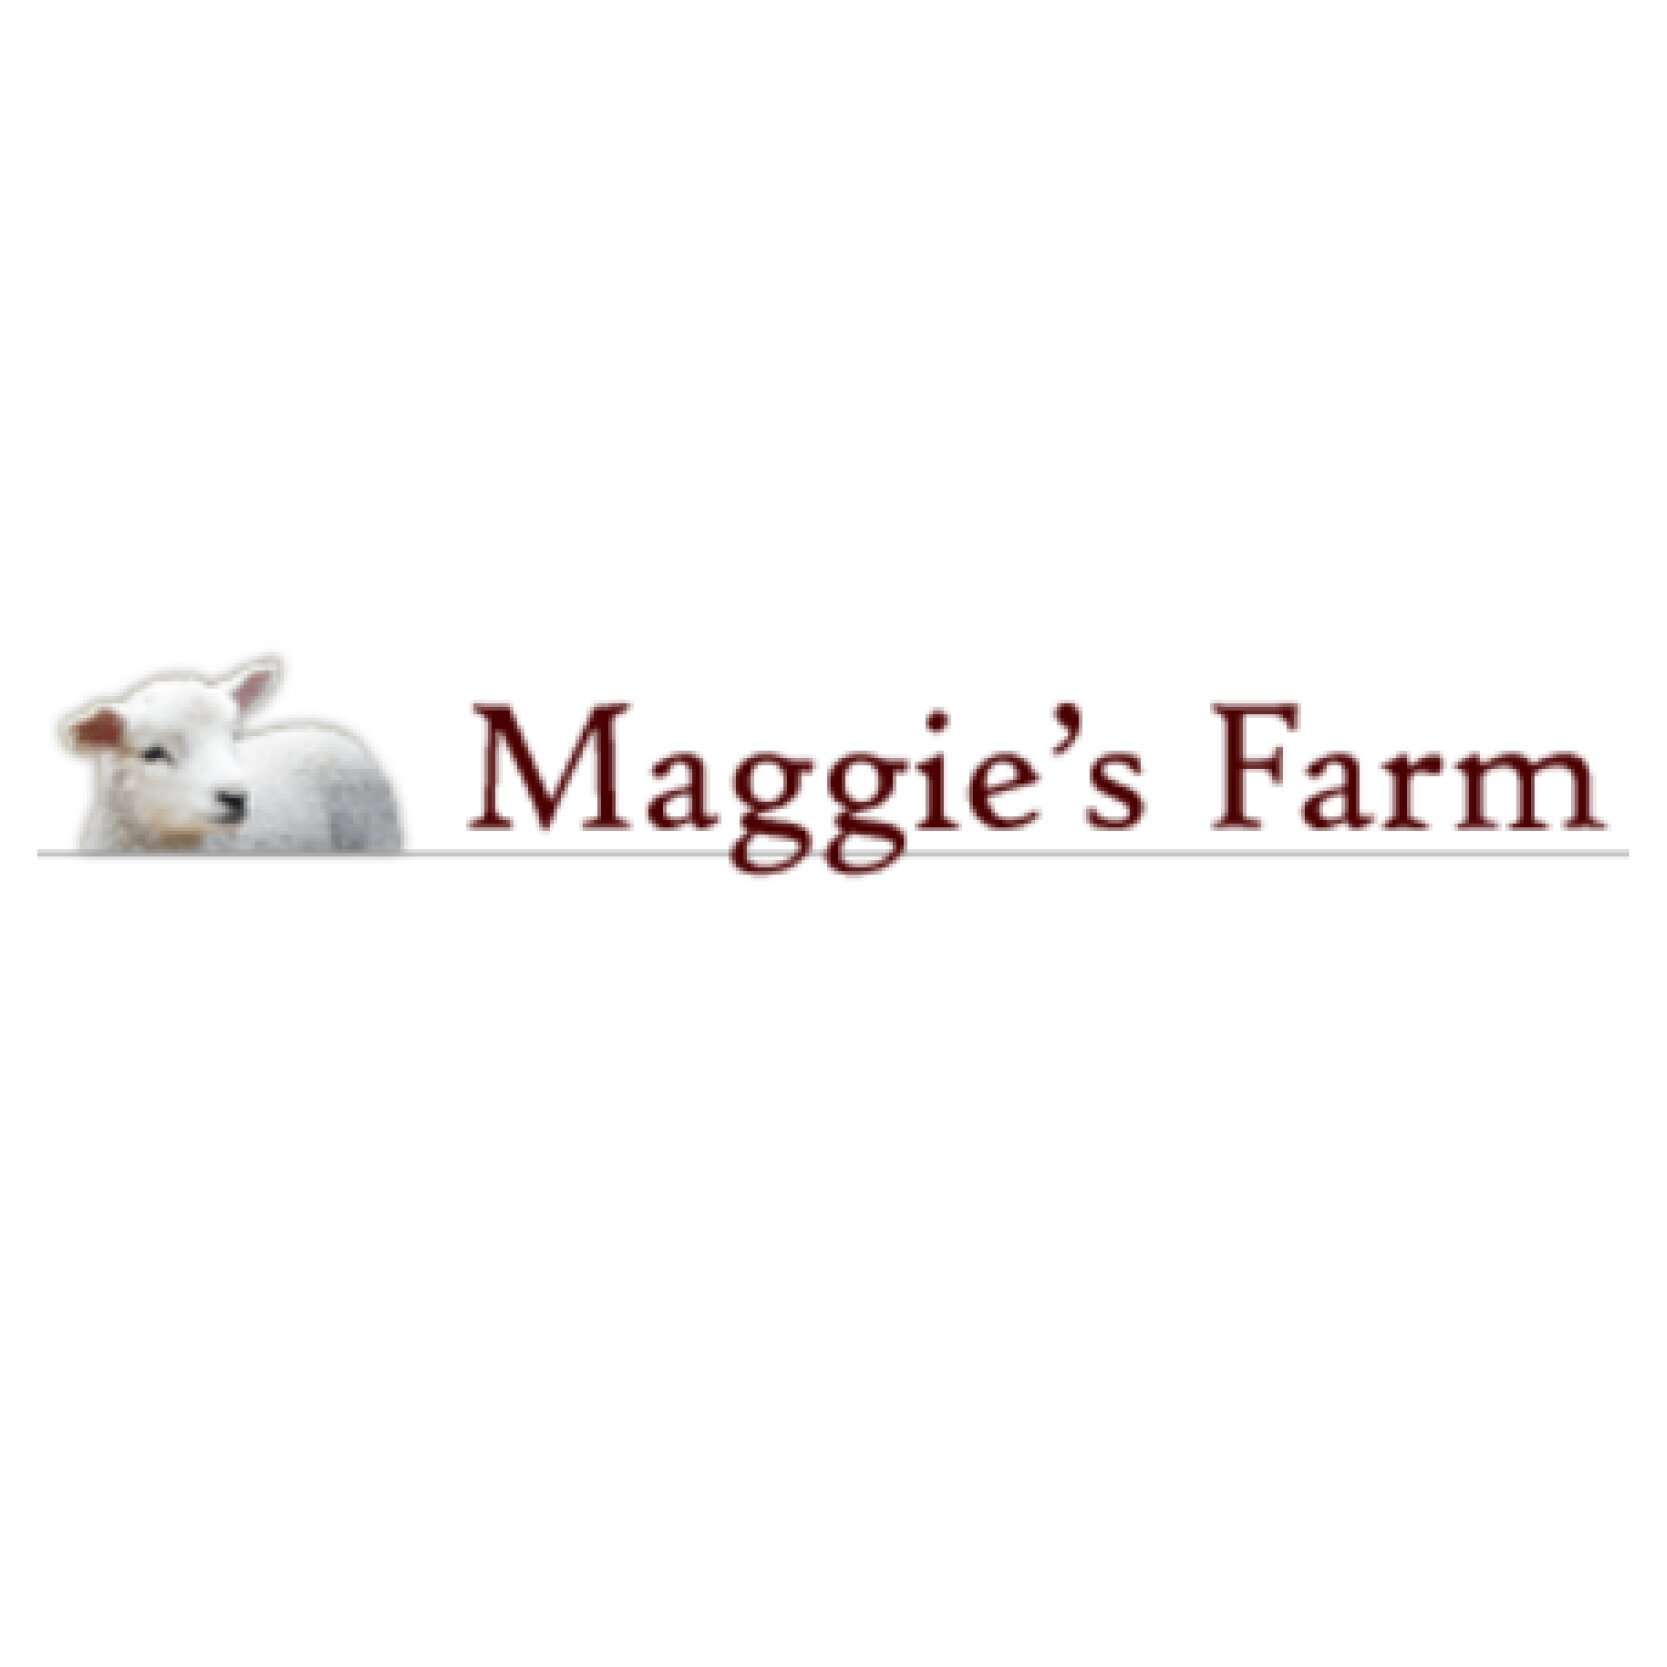 maggies farm.jpg